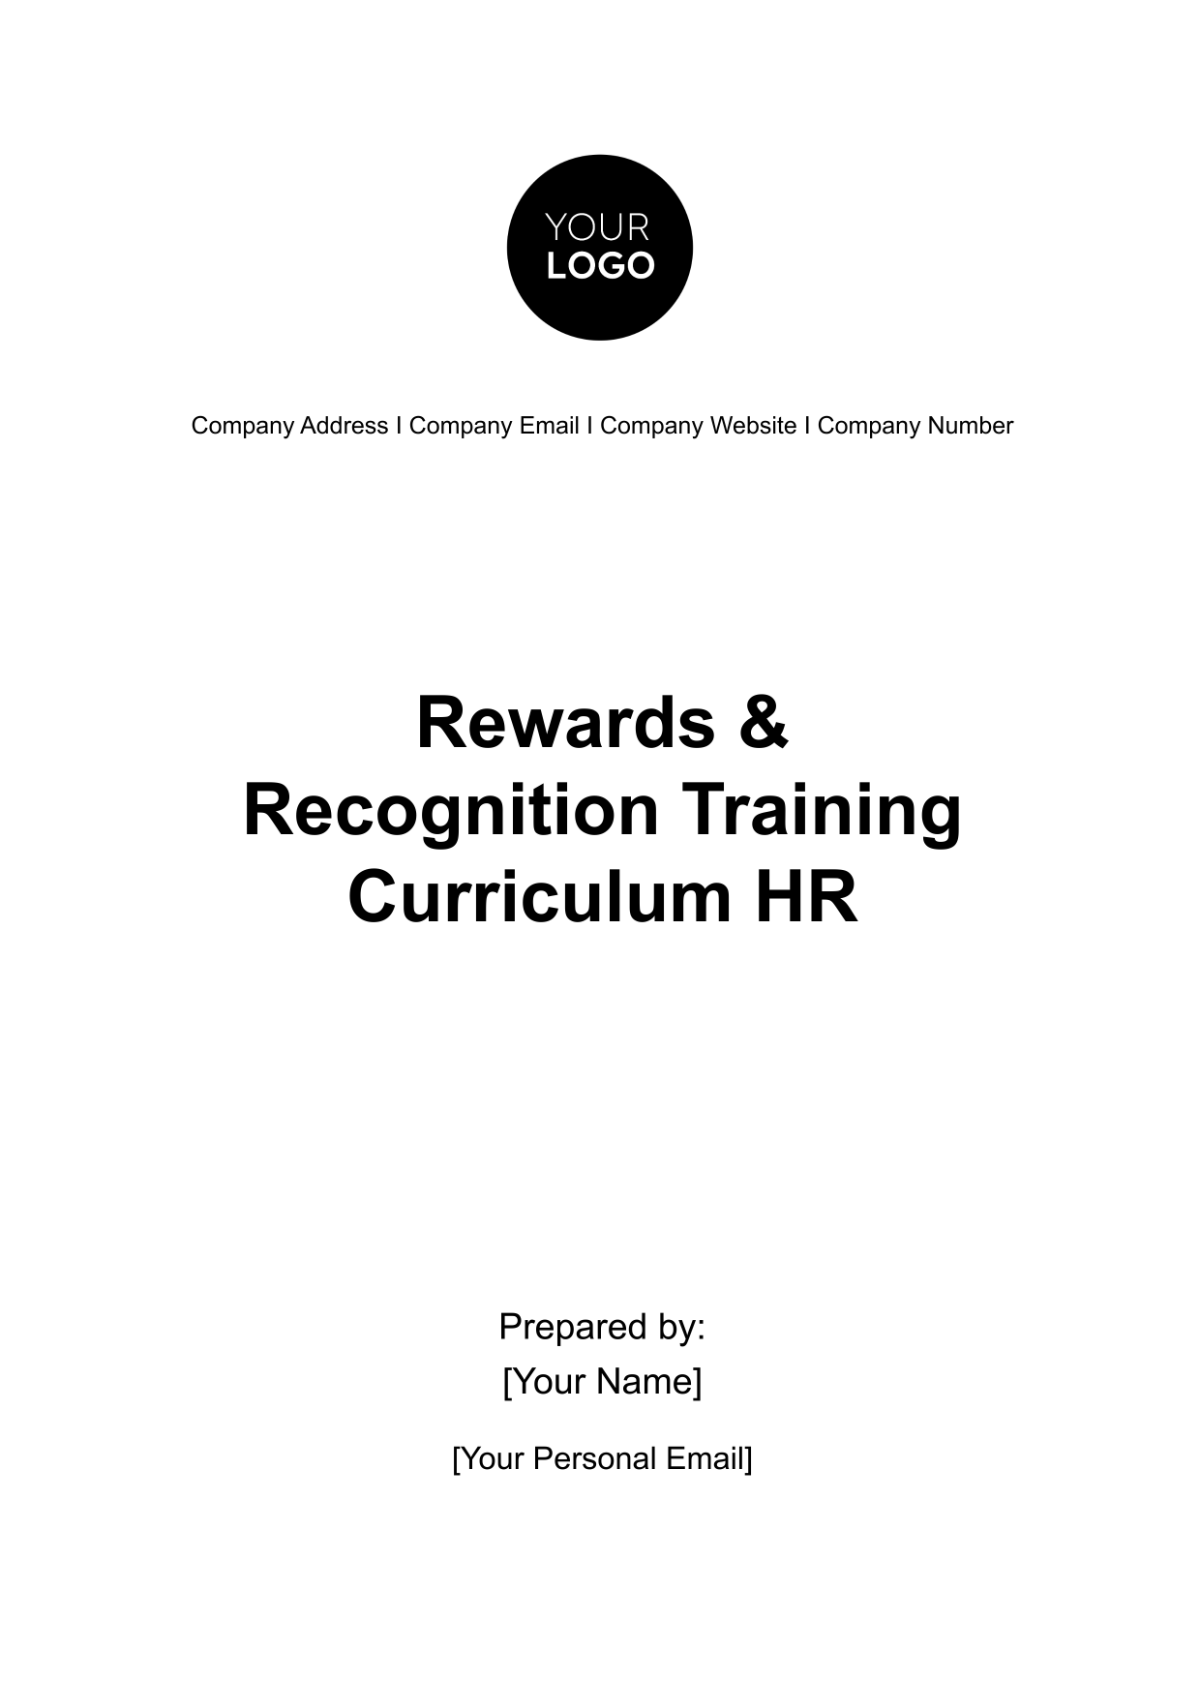 Rewards & Recognition Training Curriculum HR Template